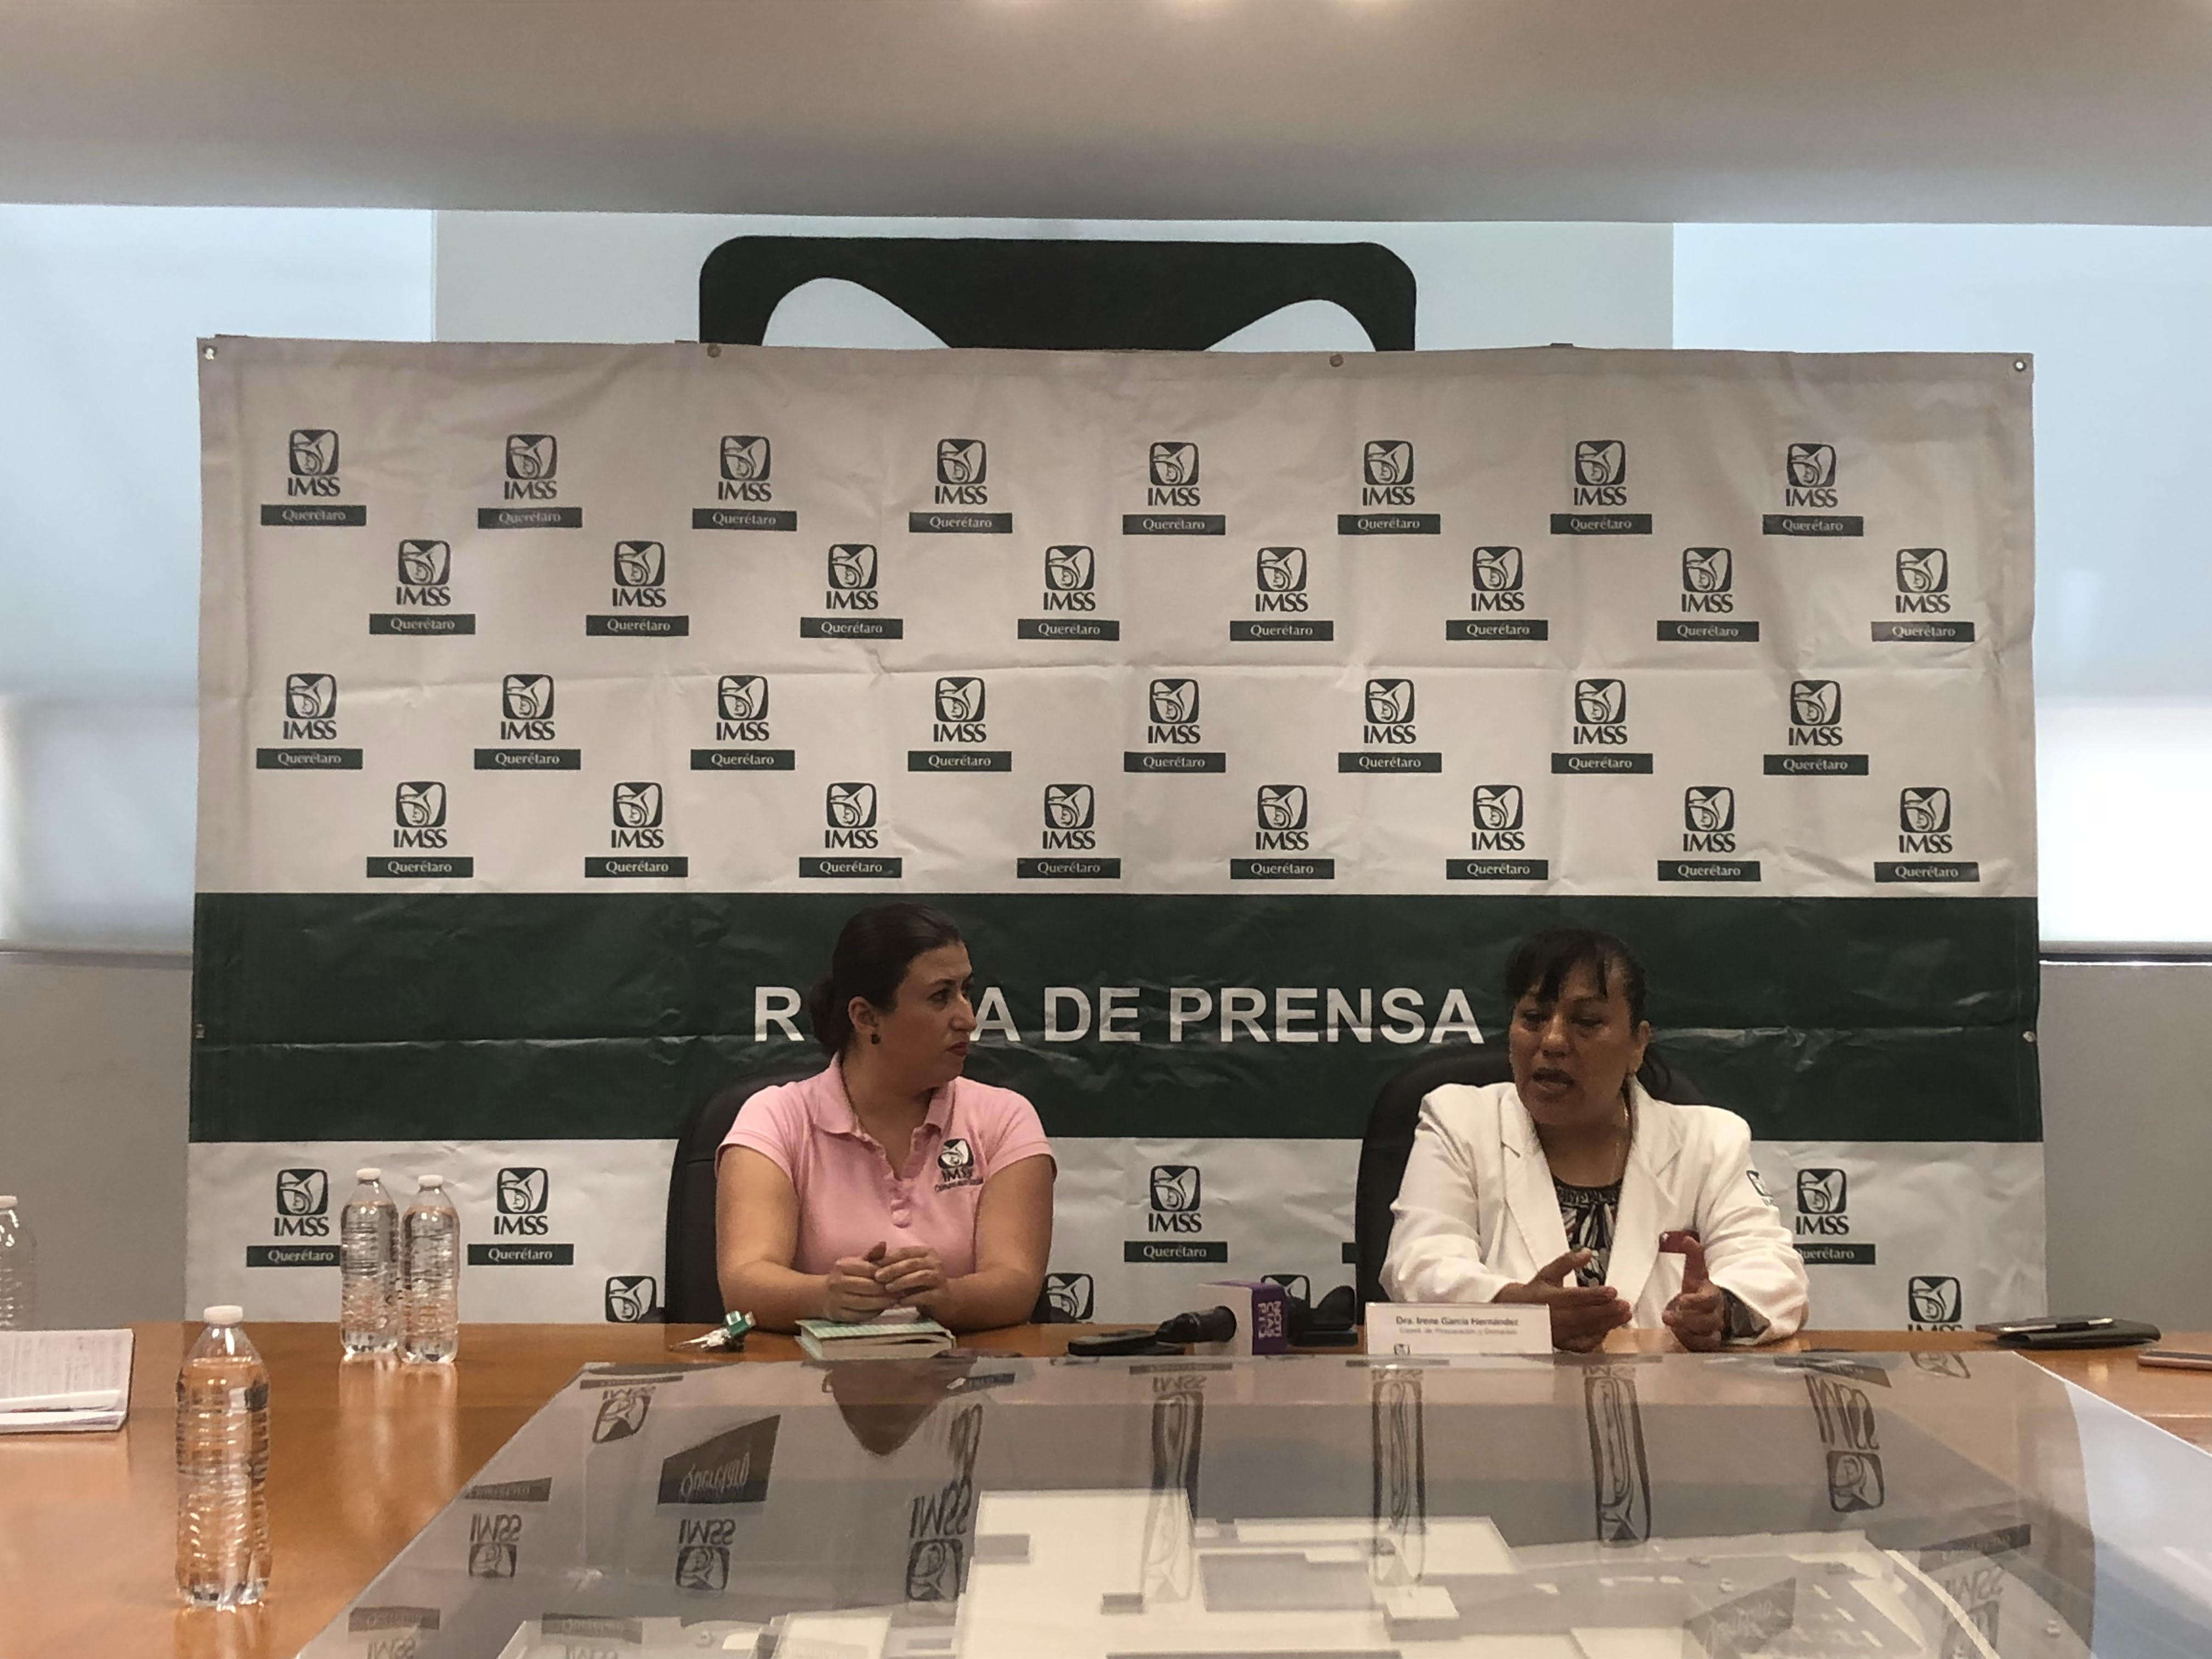  IMSS realiza procuración multiorgánica en Querétaro